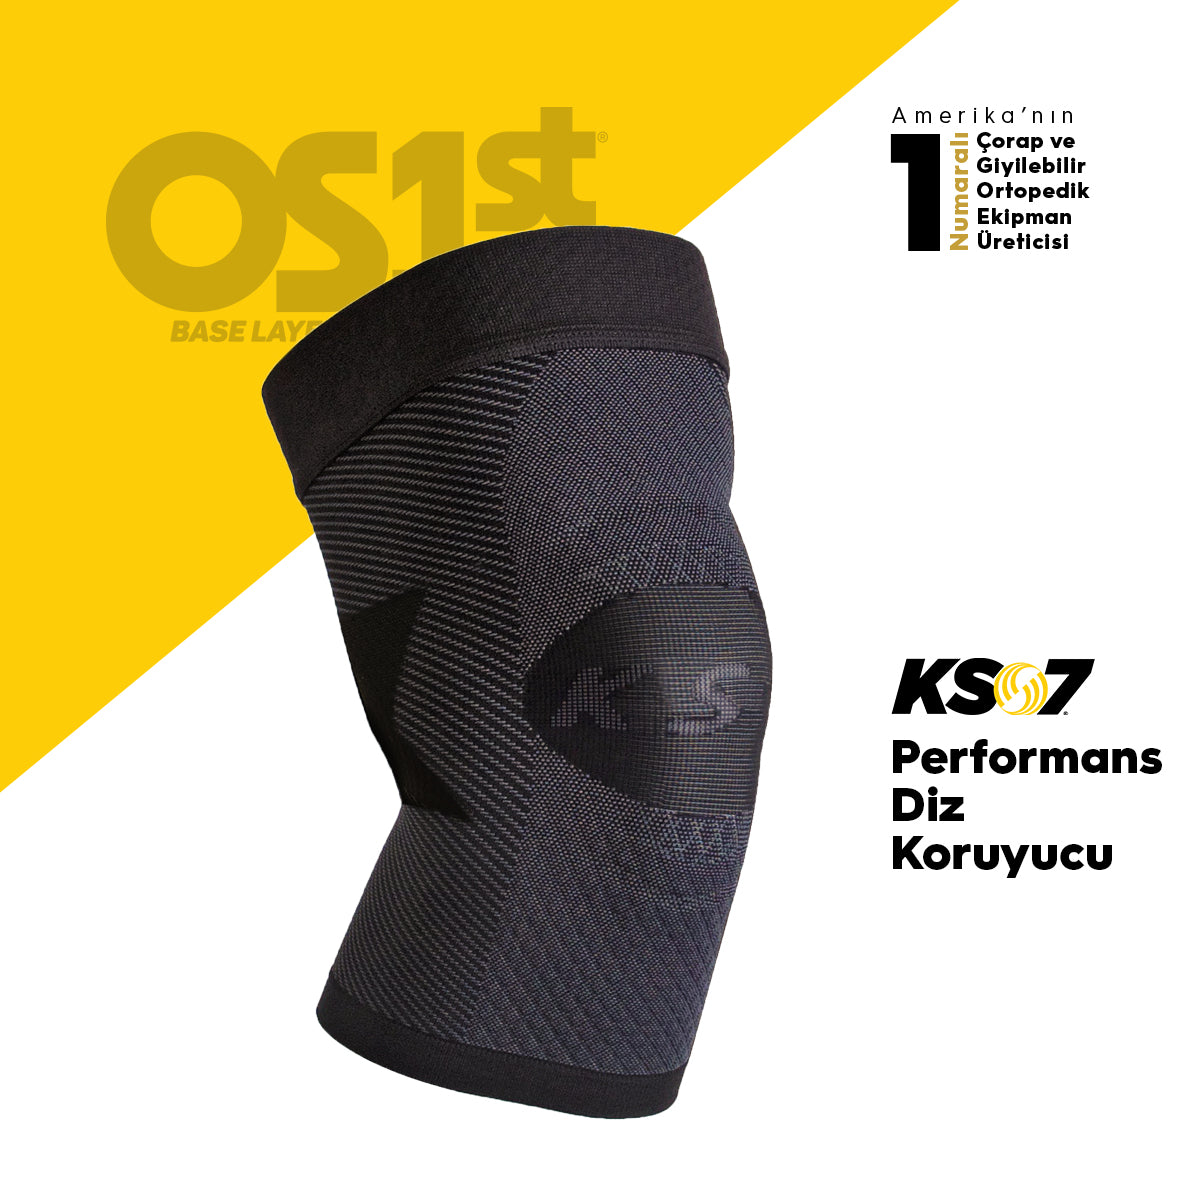 OS1st KS7 dizlik, medikal diz desteği